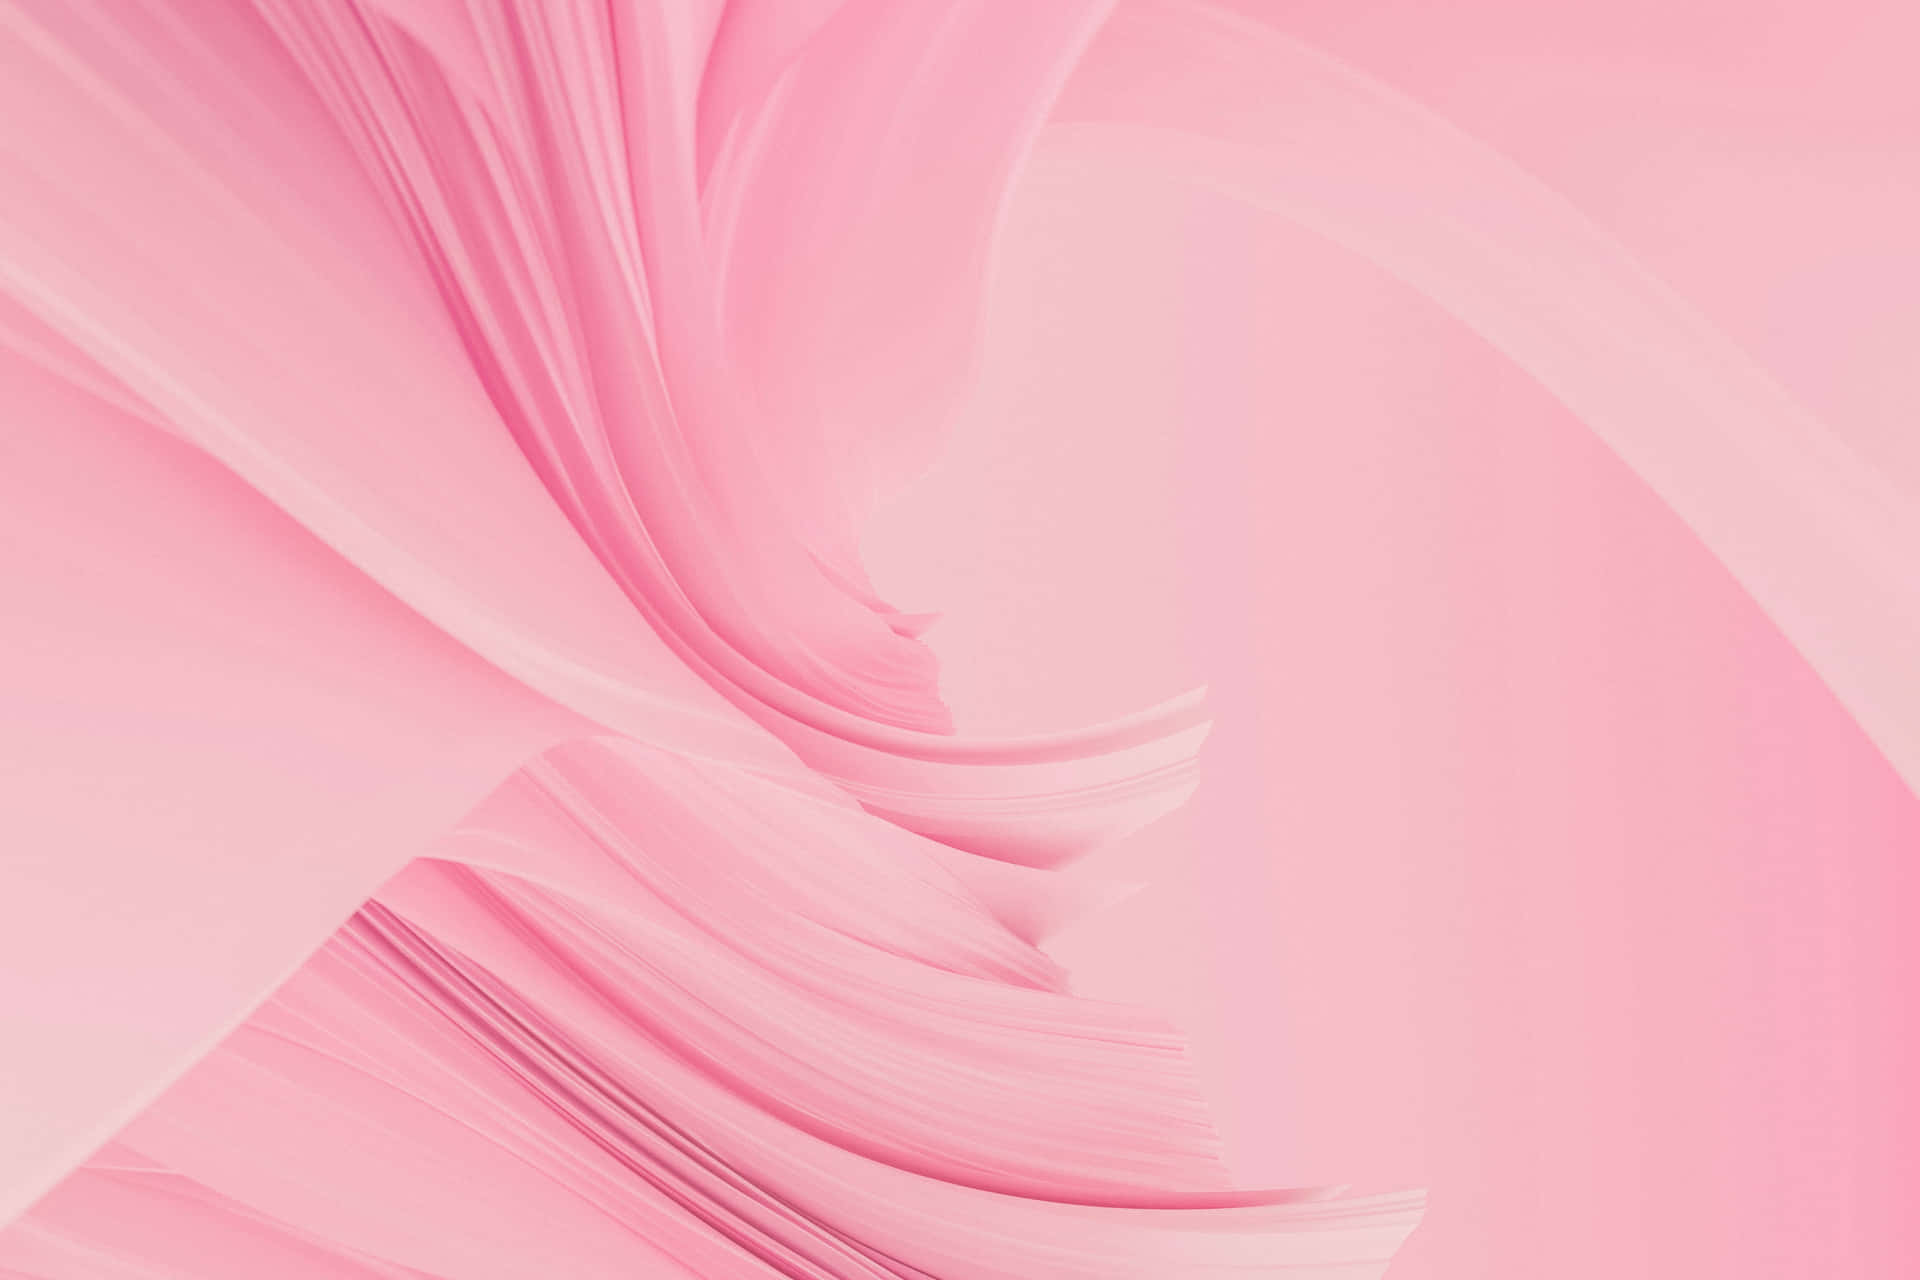 Firaskönheten I Enkelhet Med Denna Vackra, Minimalistiska Rosa Bakgrundsbild. Wallpaper